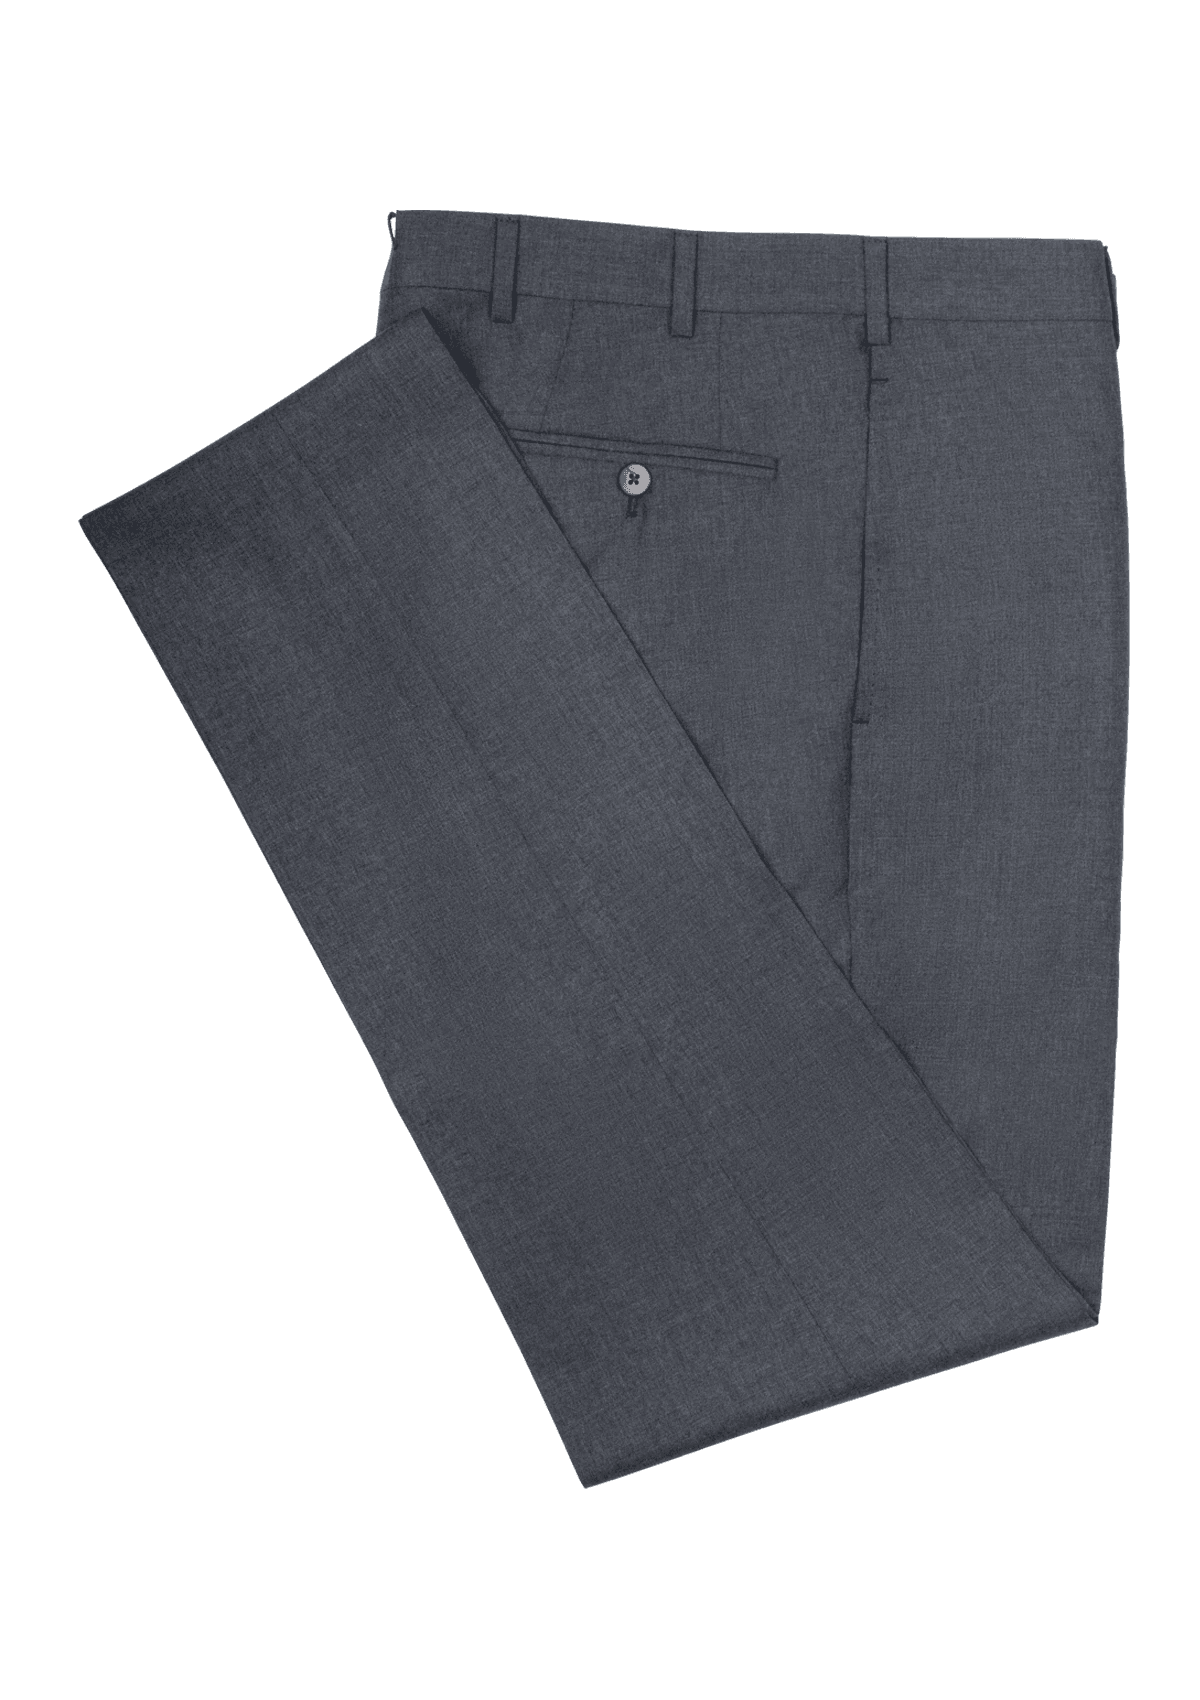 Grey Light Wool Men's Trousers